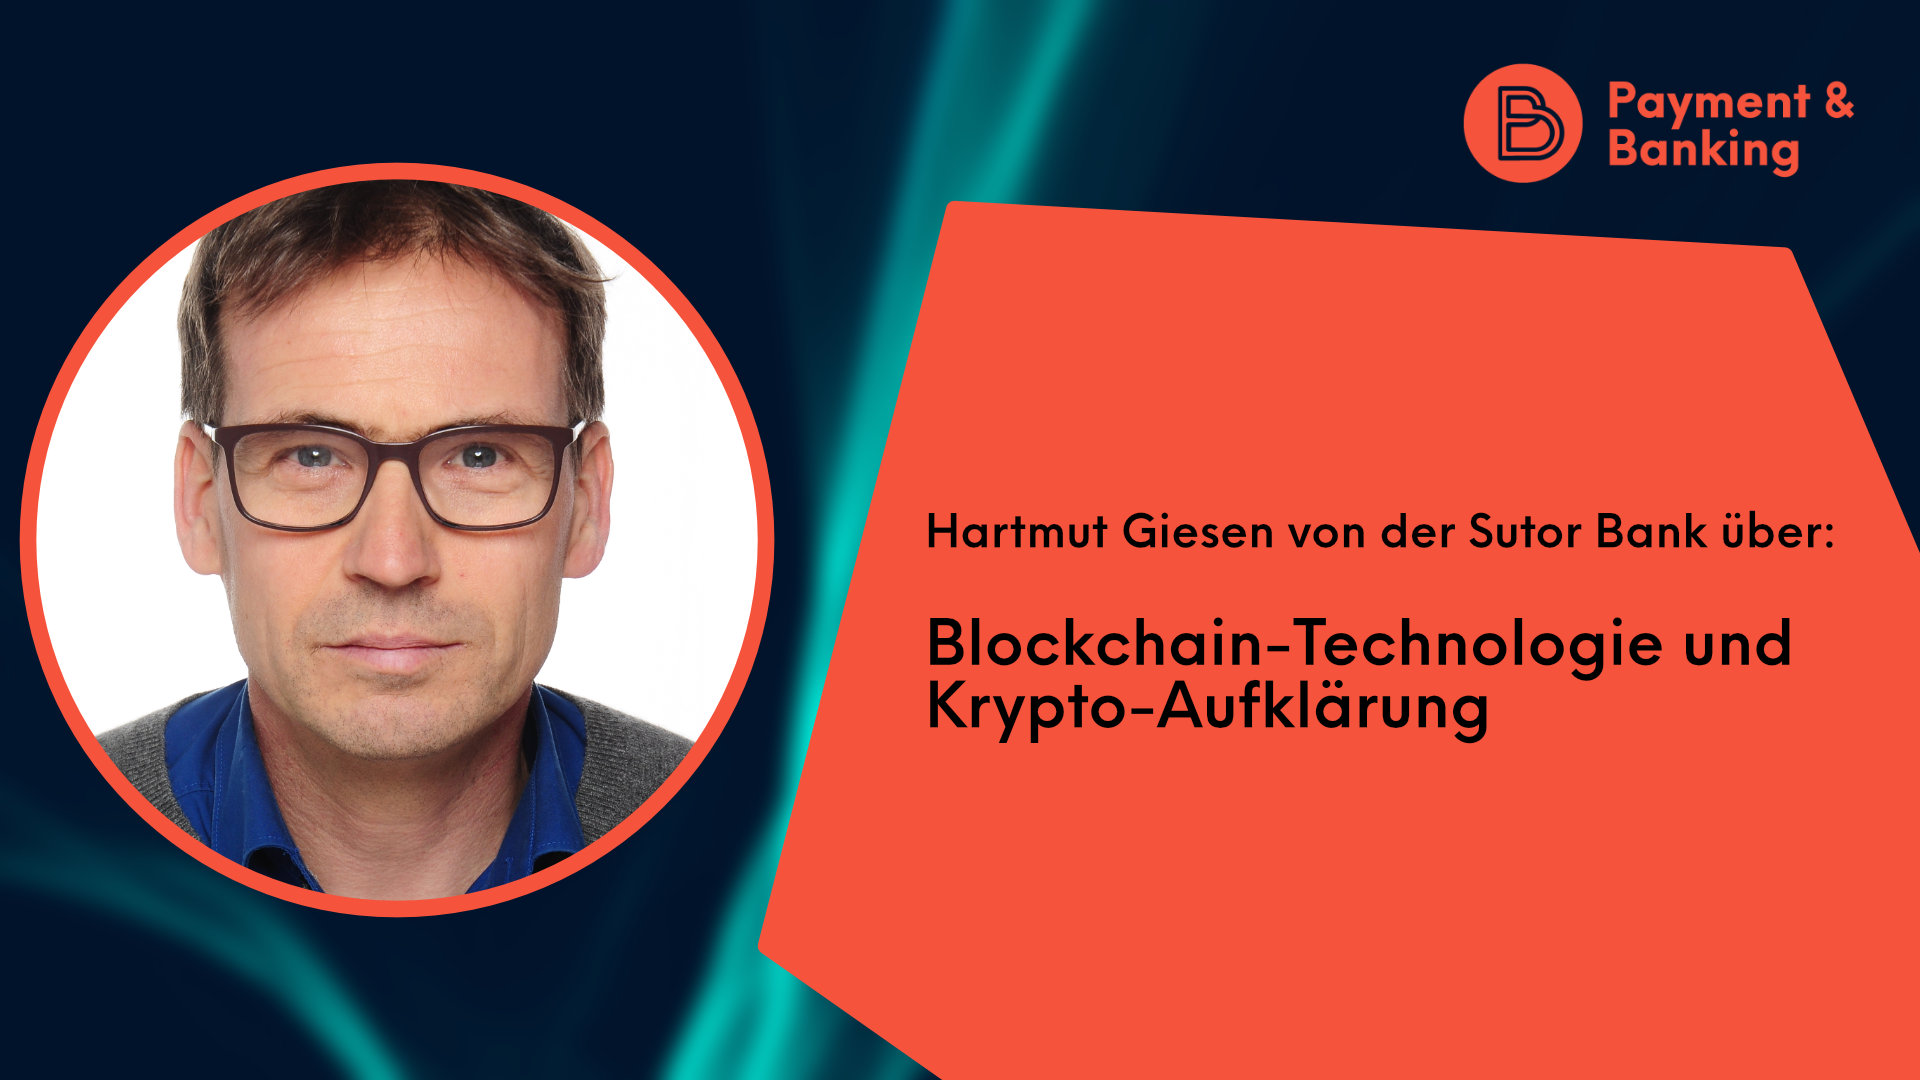 Hartmut Giesen von der Sutor Bank über Blockchain-Technologie und